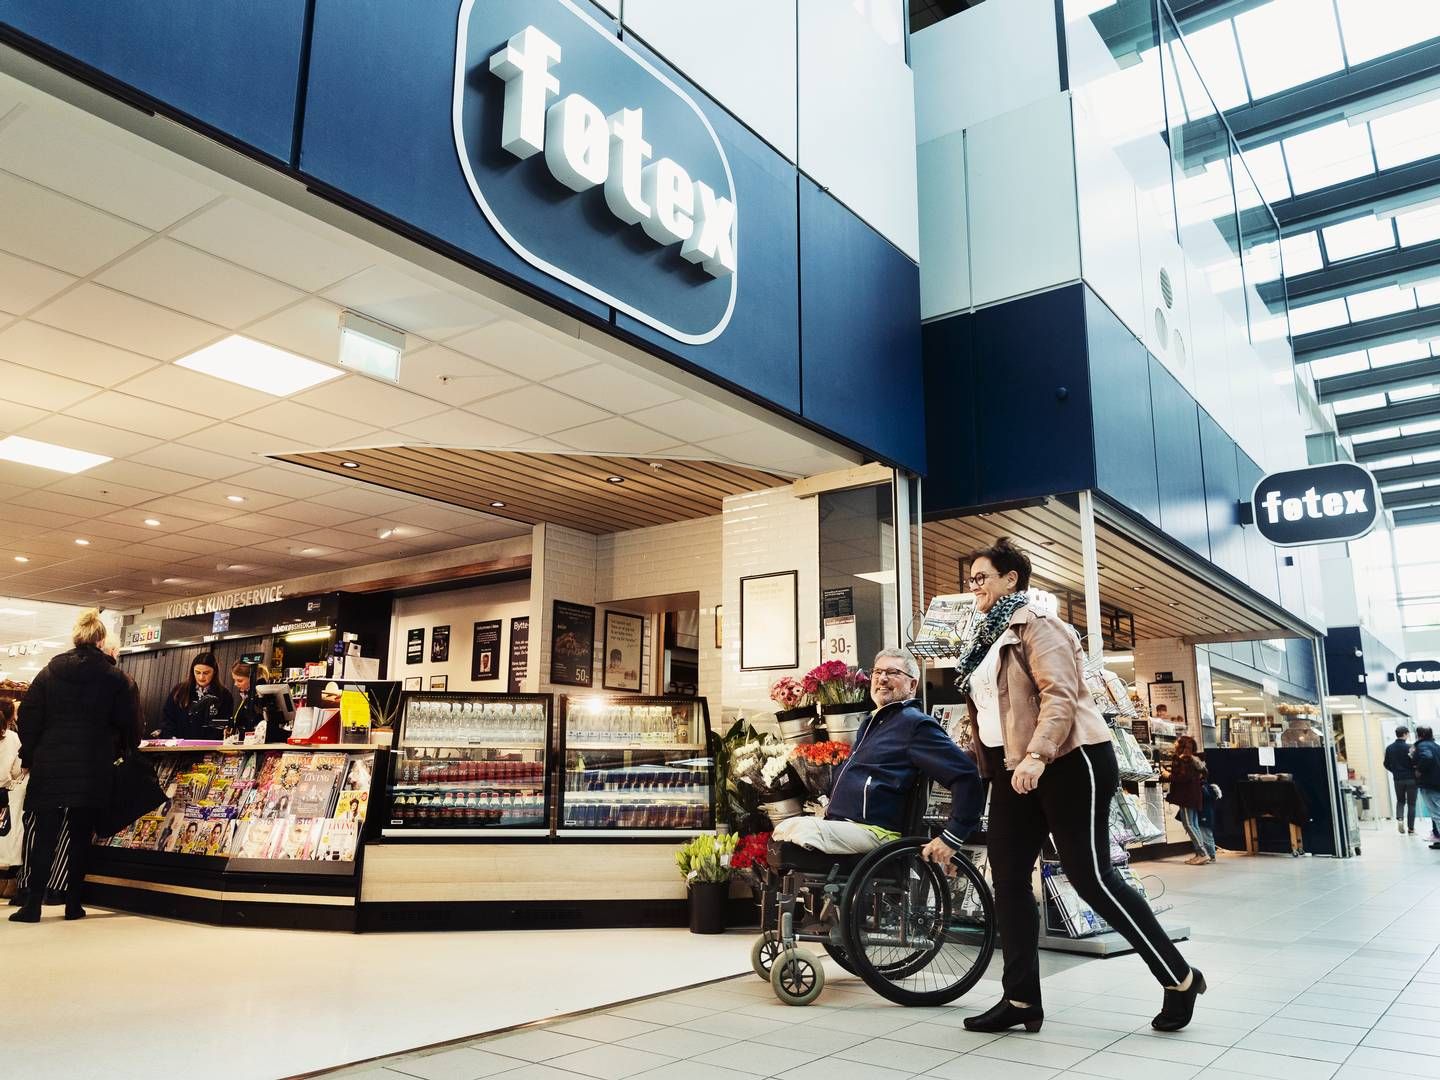 Den første Føtex-butik åbnede i 1960. I dag består kæden af godt 100 forretninger landet over. | Foto: Salling Group/pr